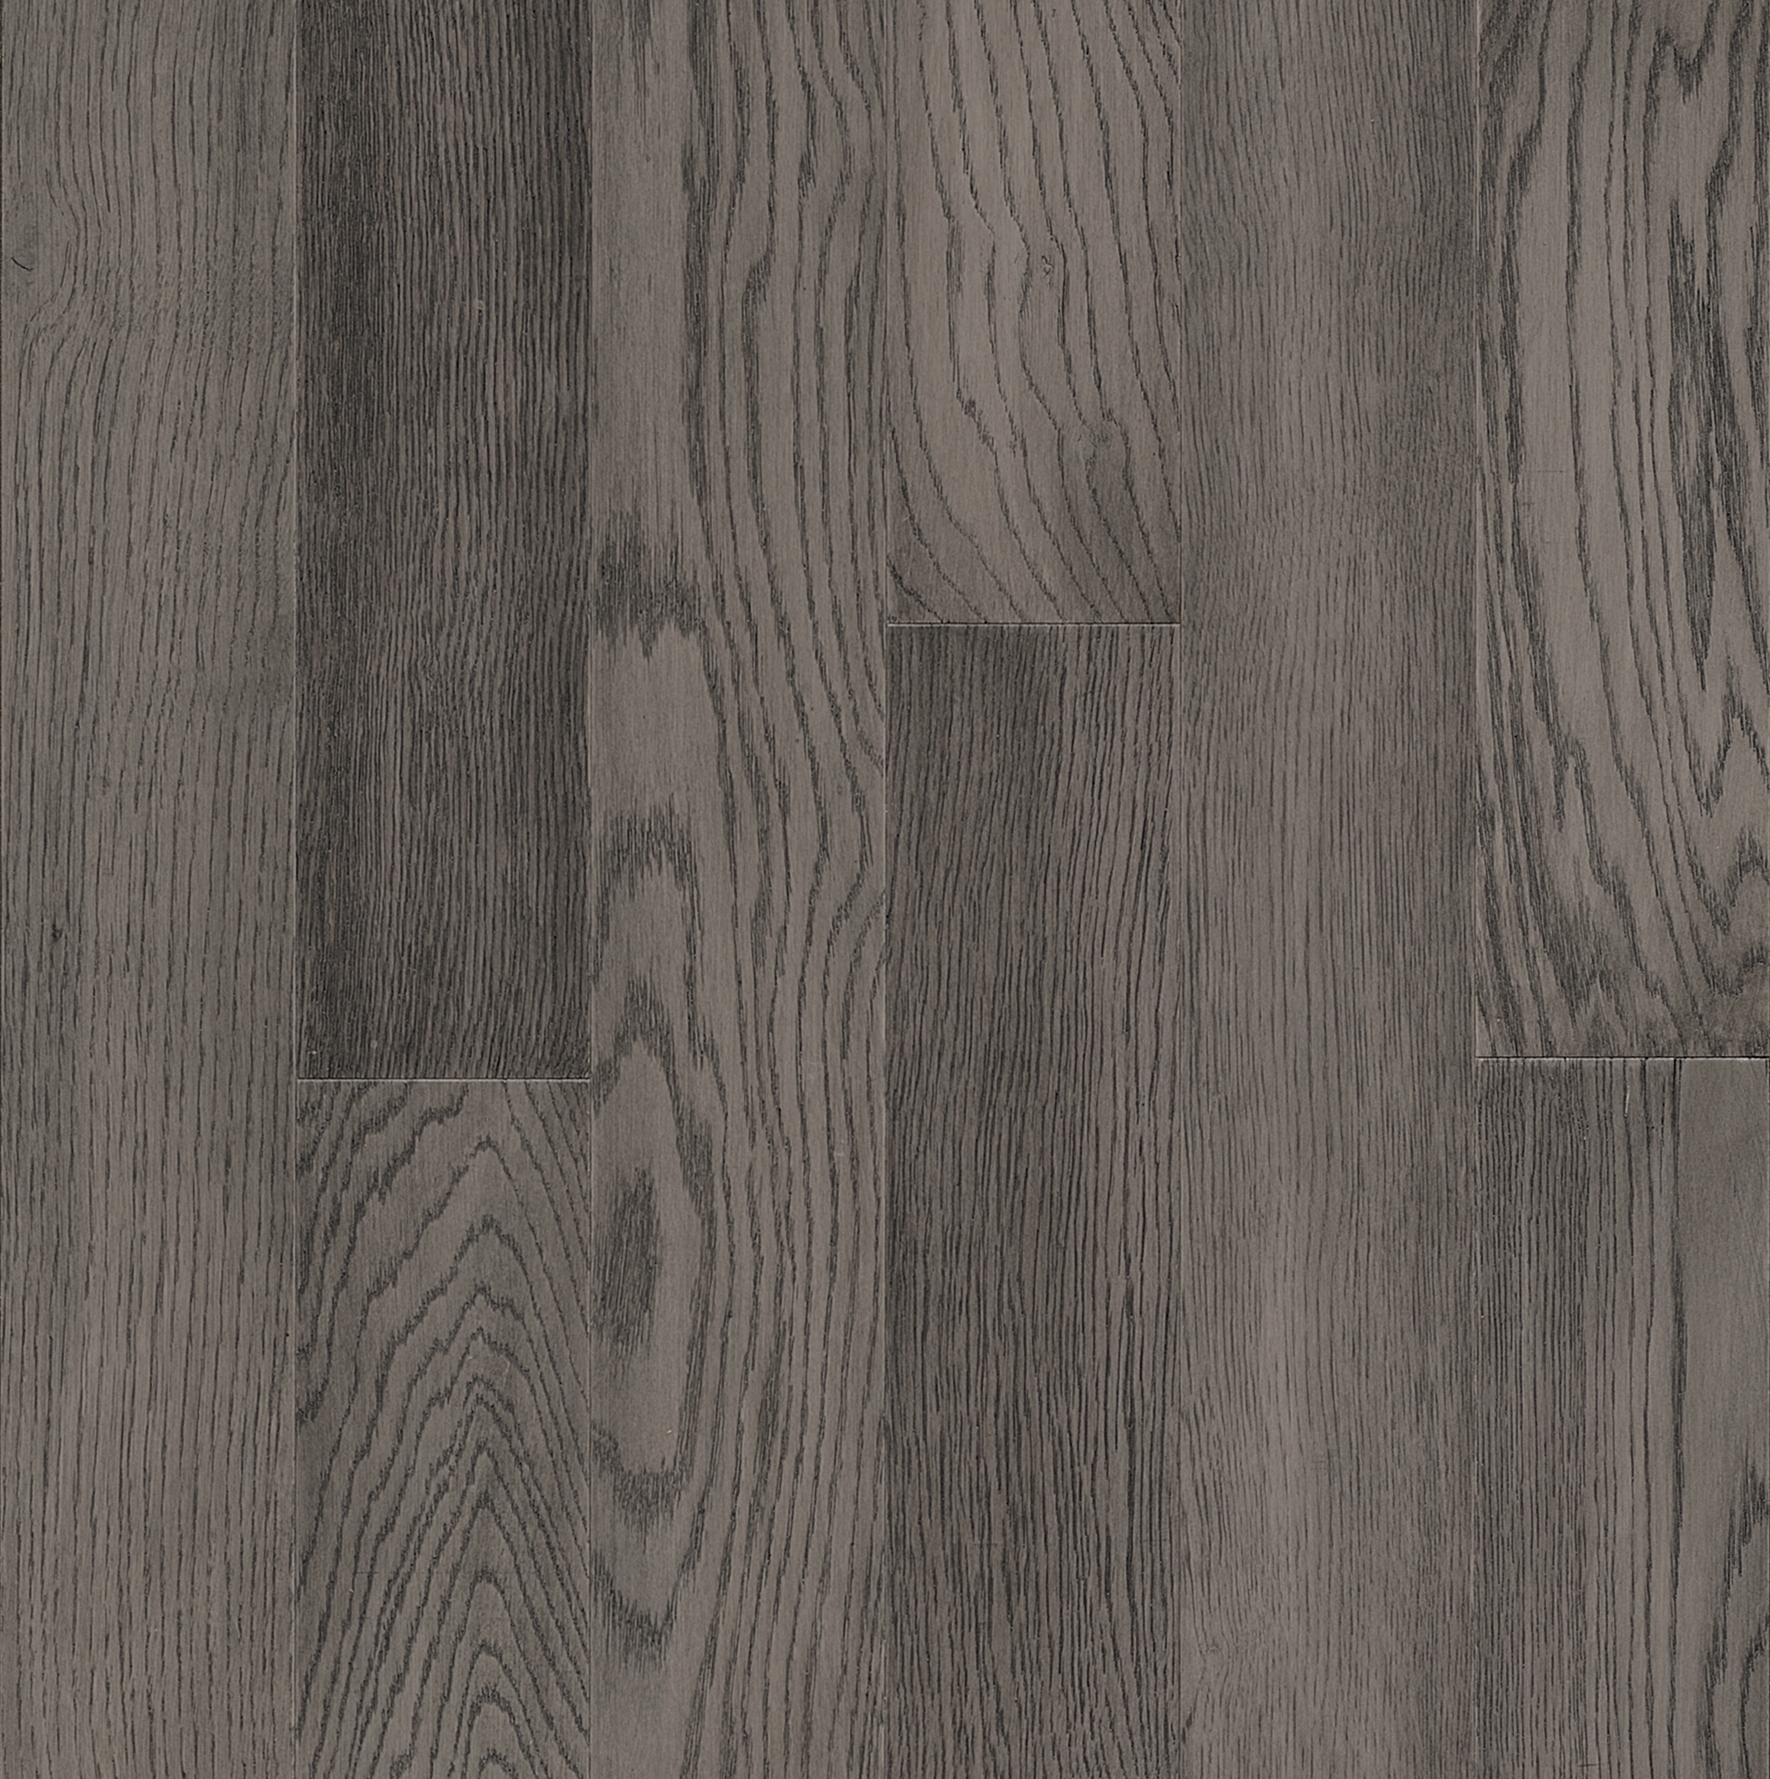 White Oak Engineered Hardwood Ekwr54l75w, Gray Engineered Hardwood Floors